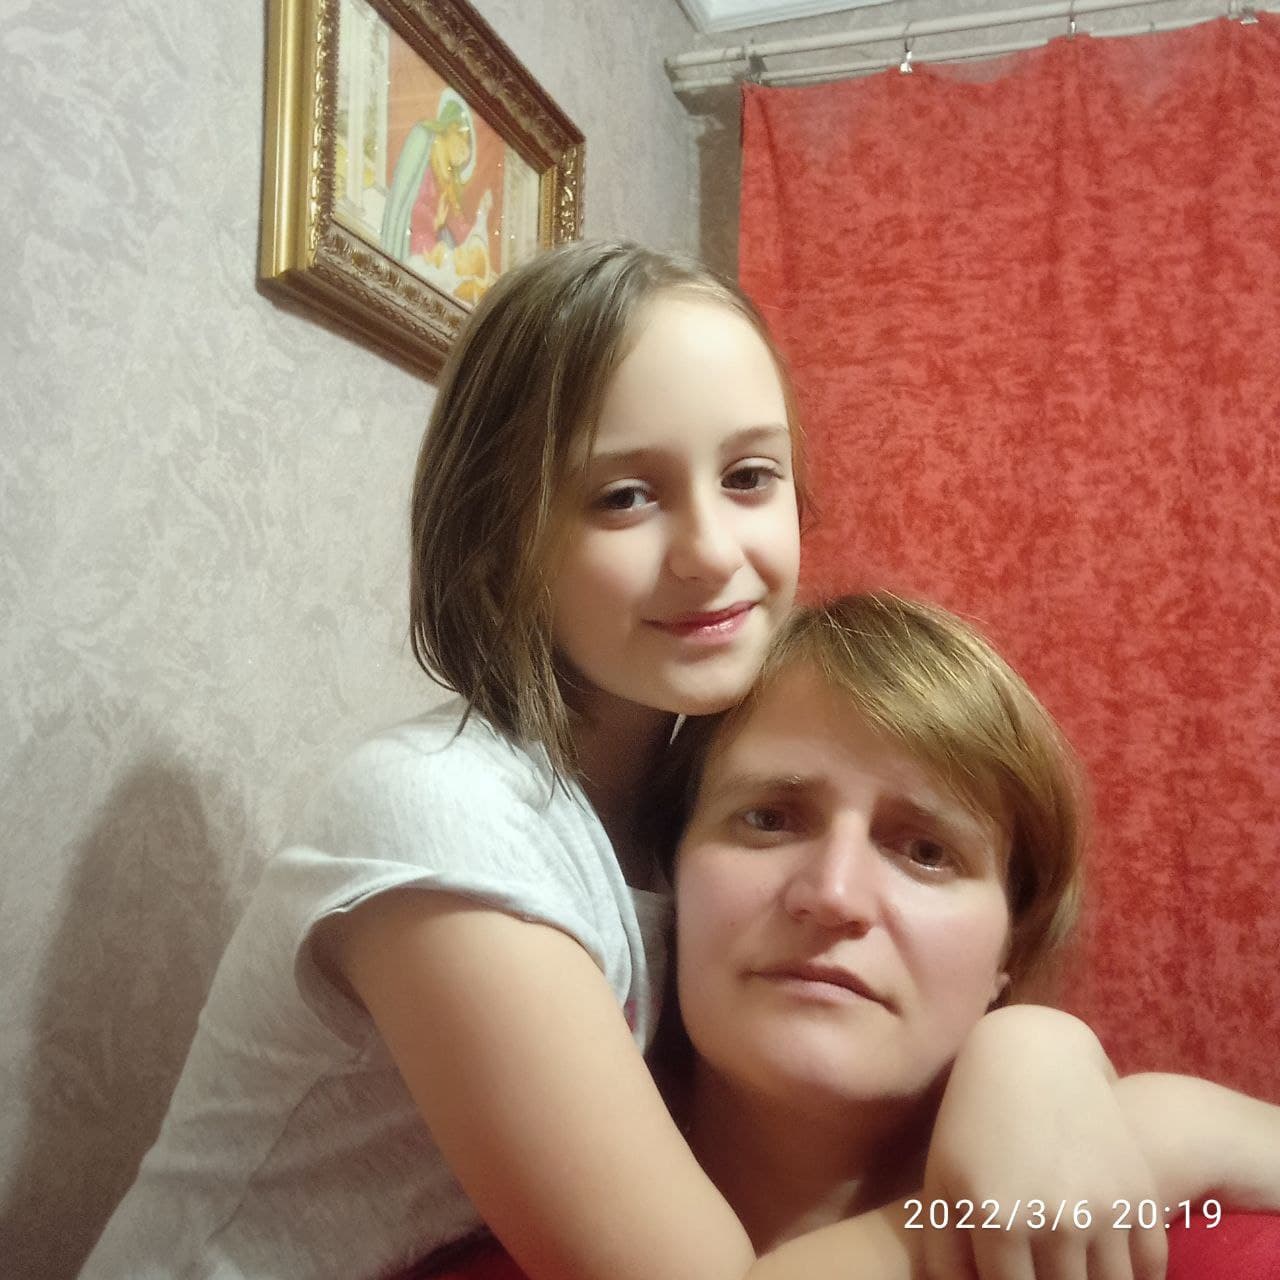 Ukraine Aid - Ukraine Families - Vitaly Book - Ukraine Update - Ukraine News